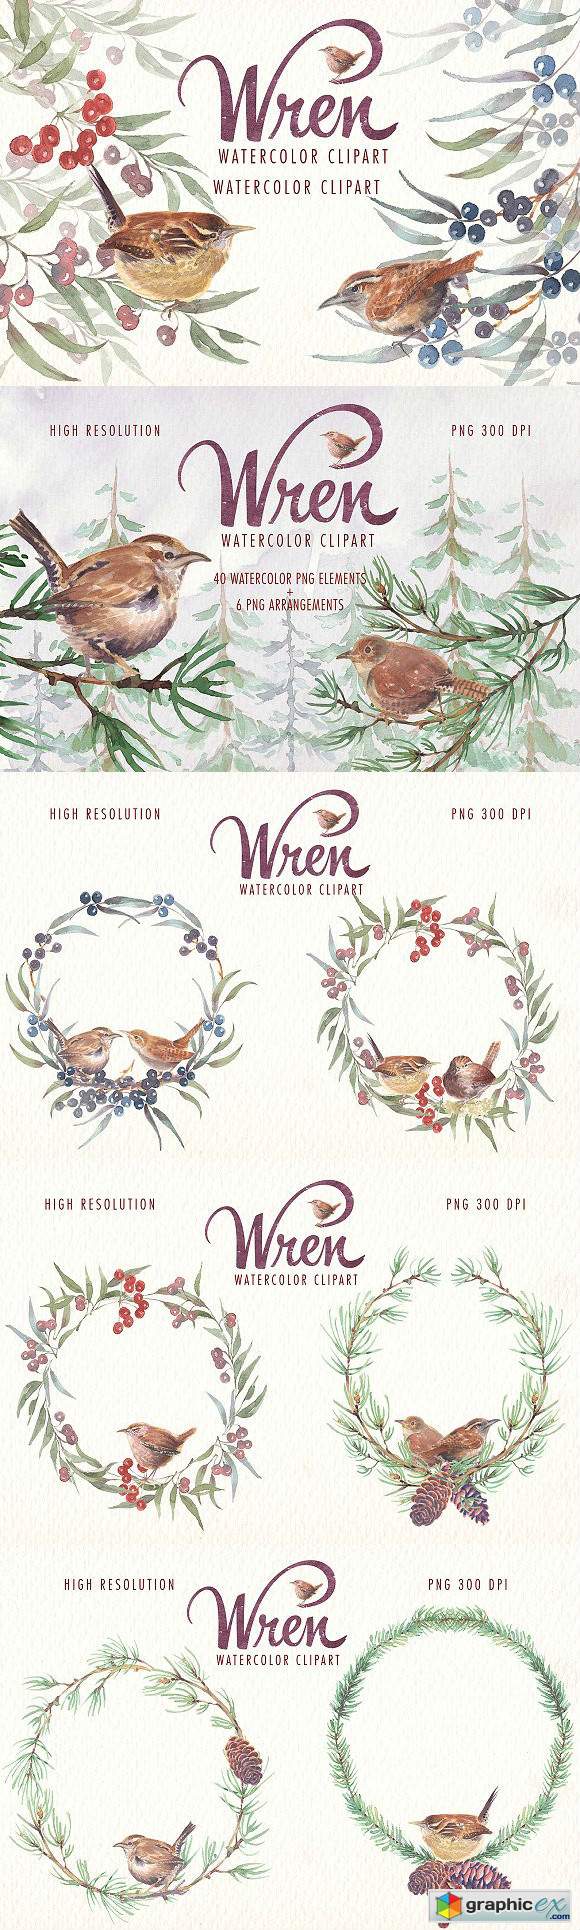 Watercolor wren bird clipart set